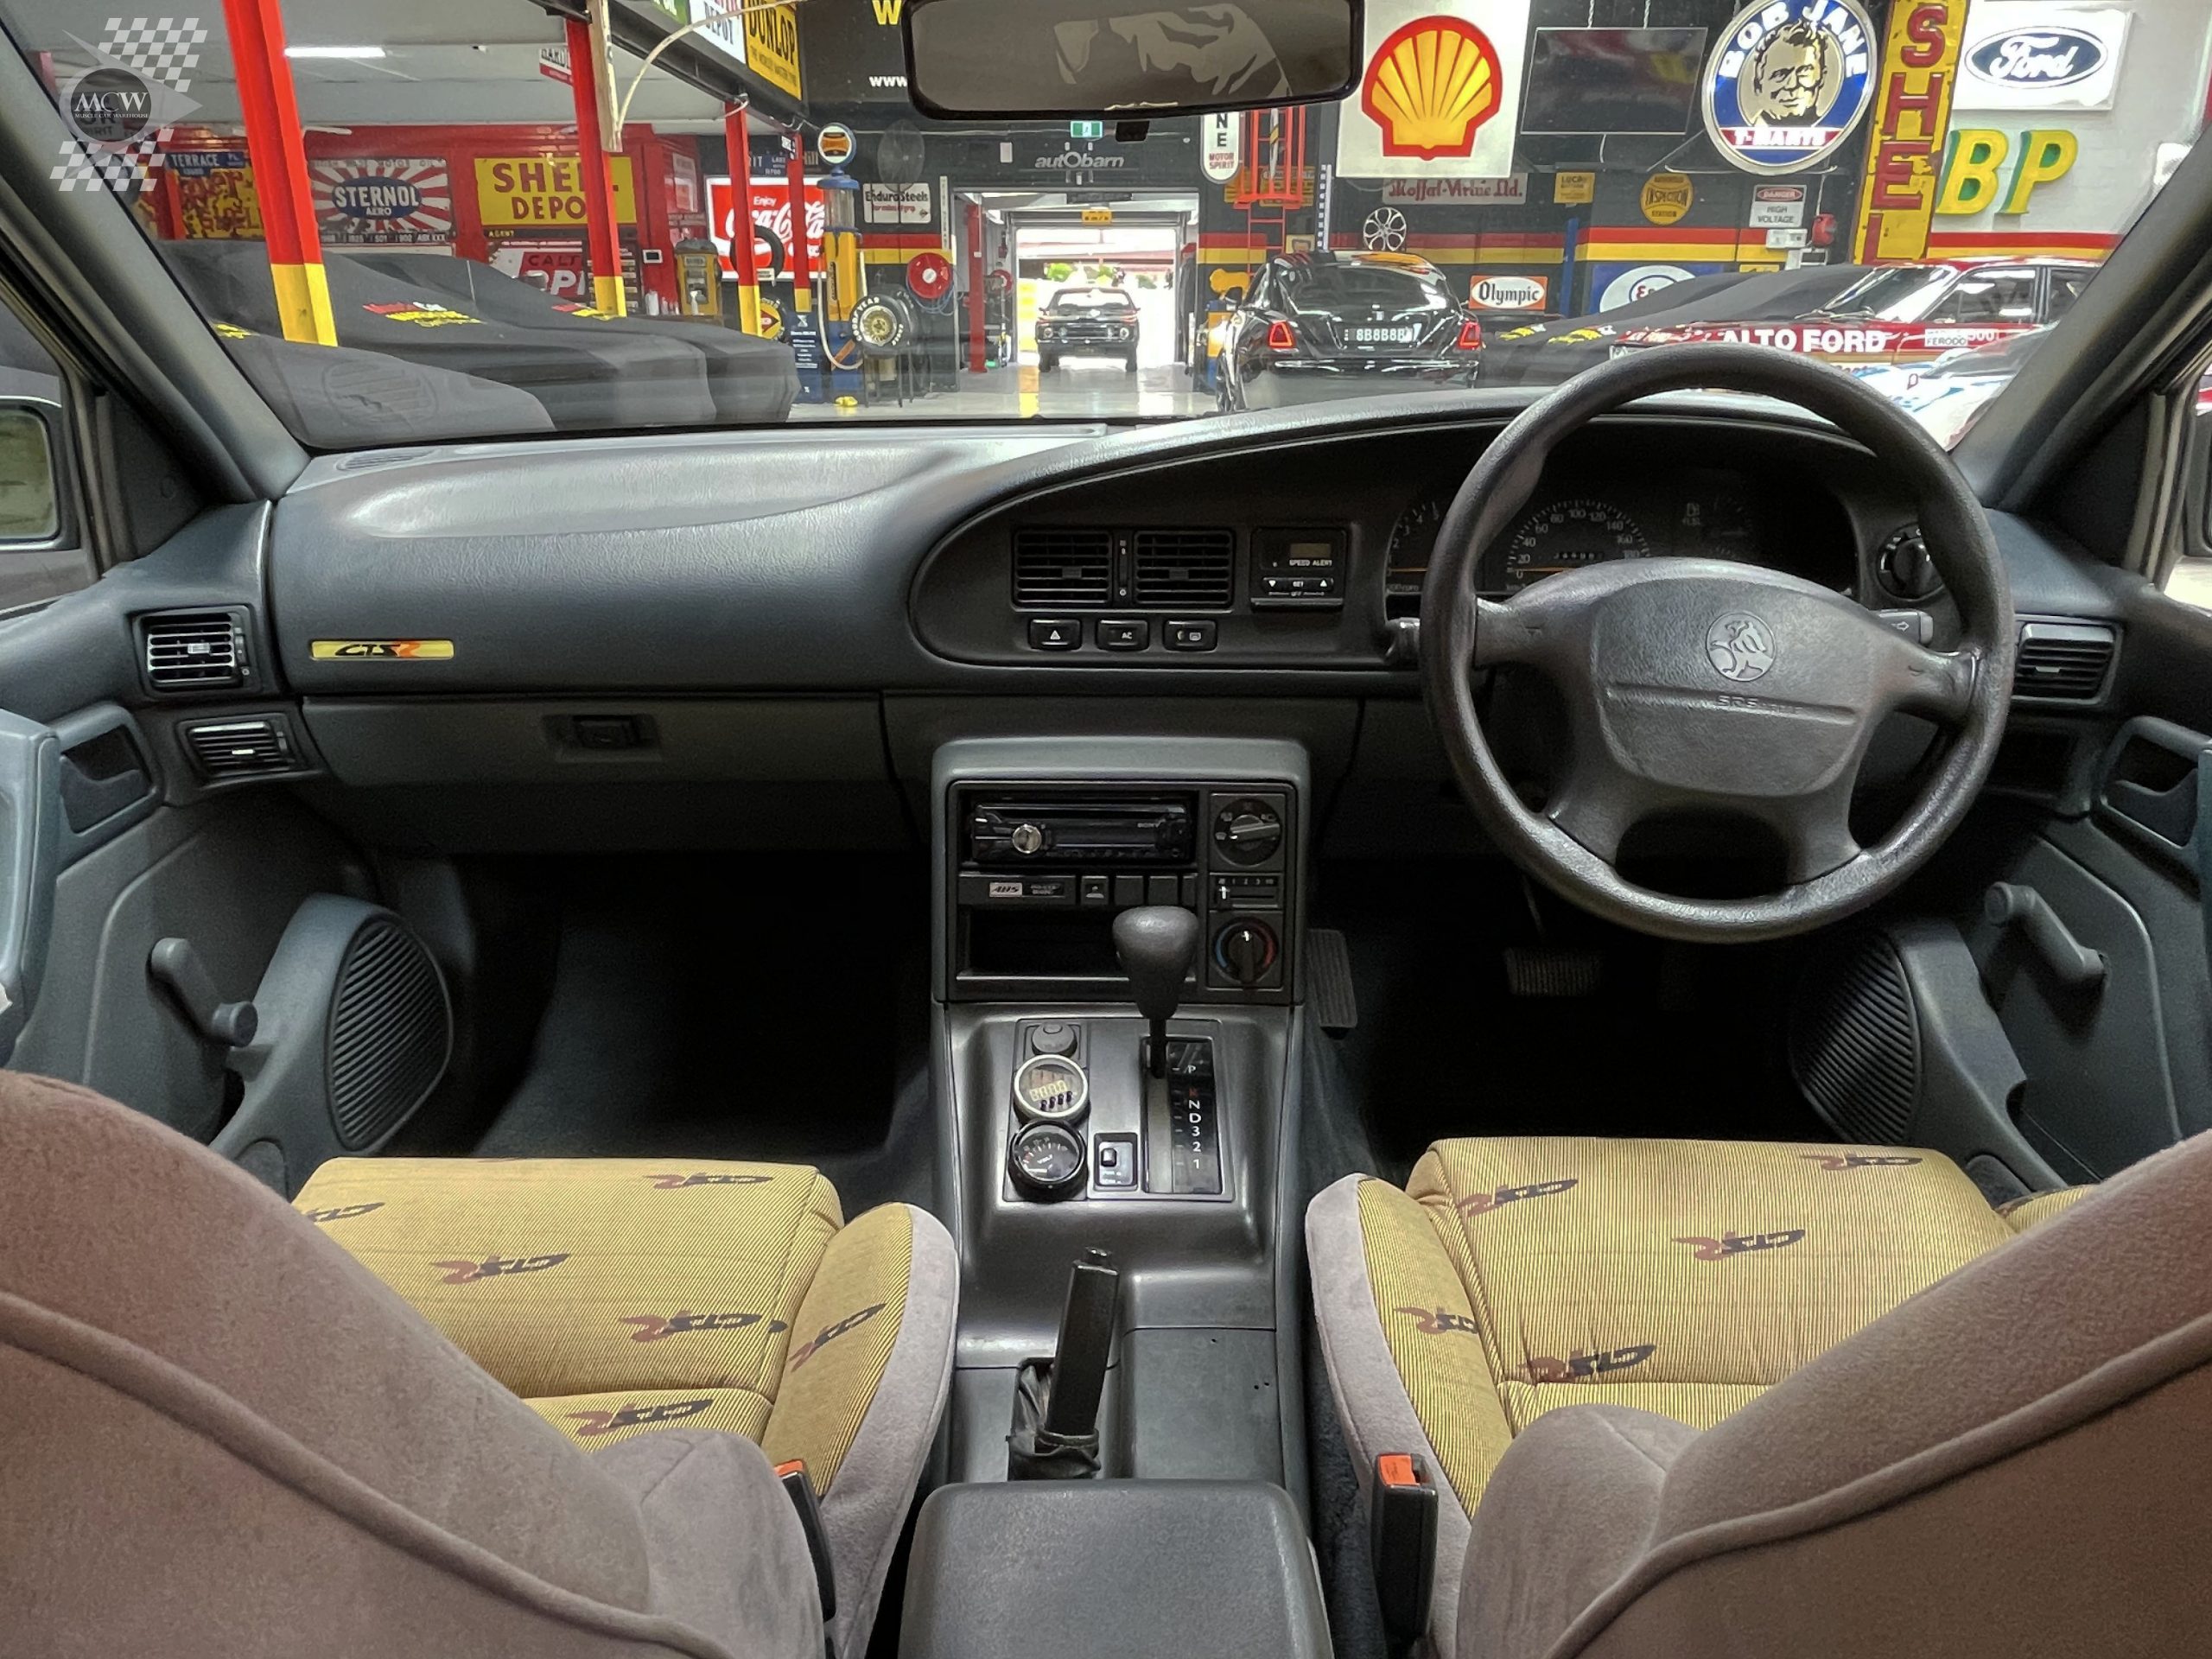 1996 Holden Commodore VS GTS-R Replica Interior - Muscle Car Warehouse